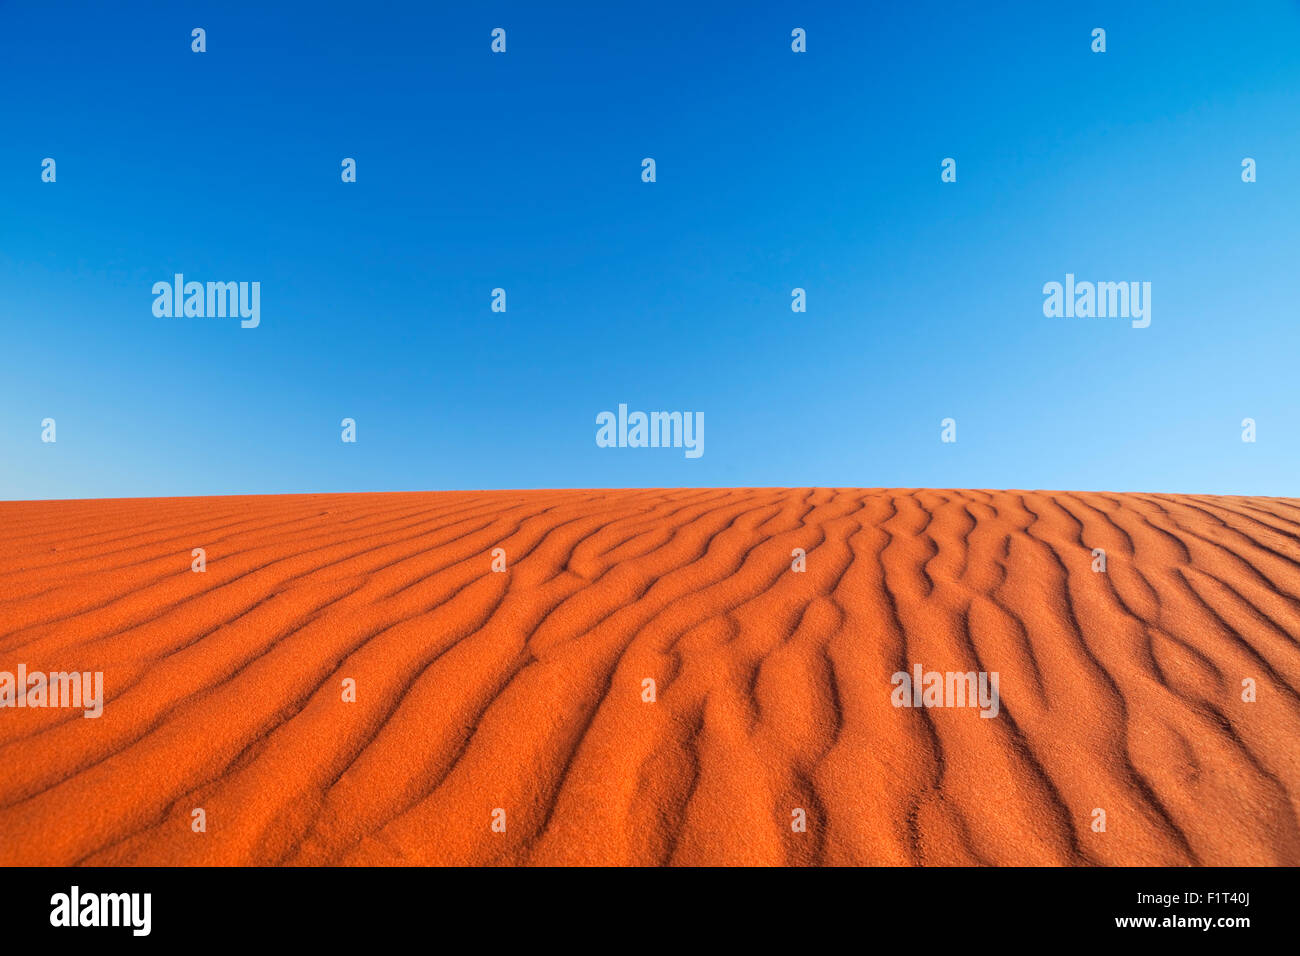 Dettaglio delle fluttuazioni in un rosso duna di sabbia in un giorno chiaro. Fotografato nel Territorio del Nord in Australia. Foto Stock